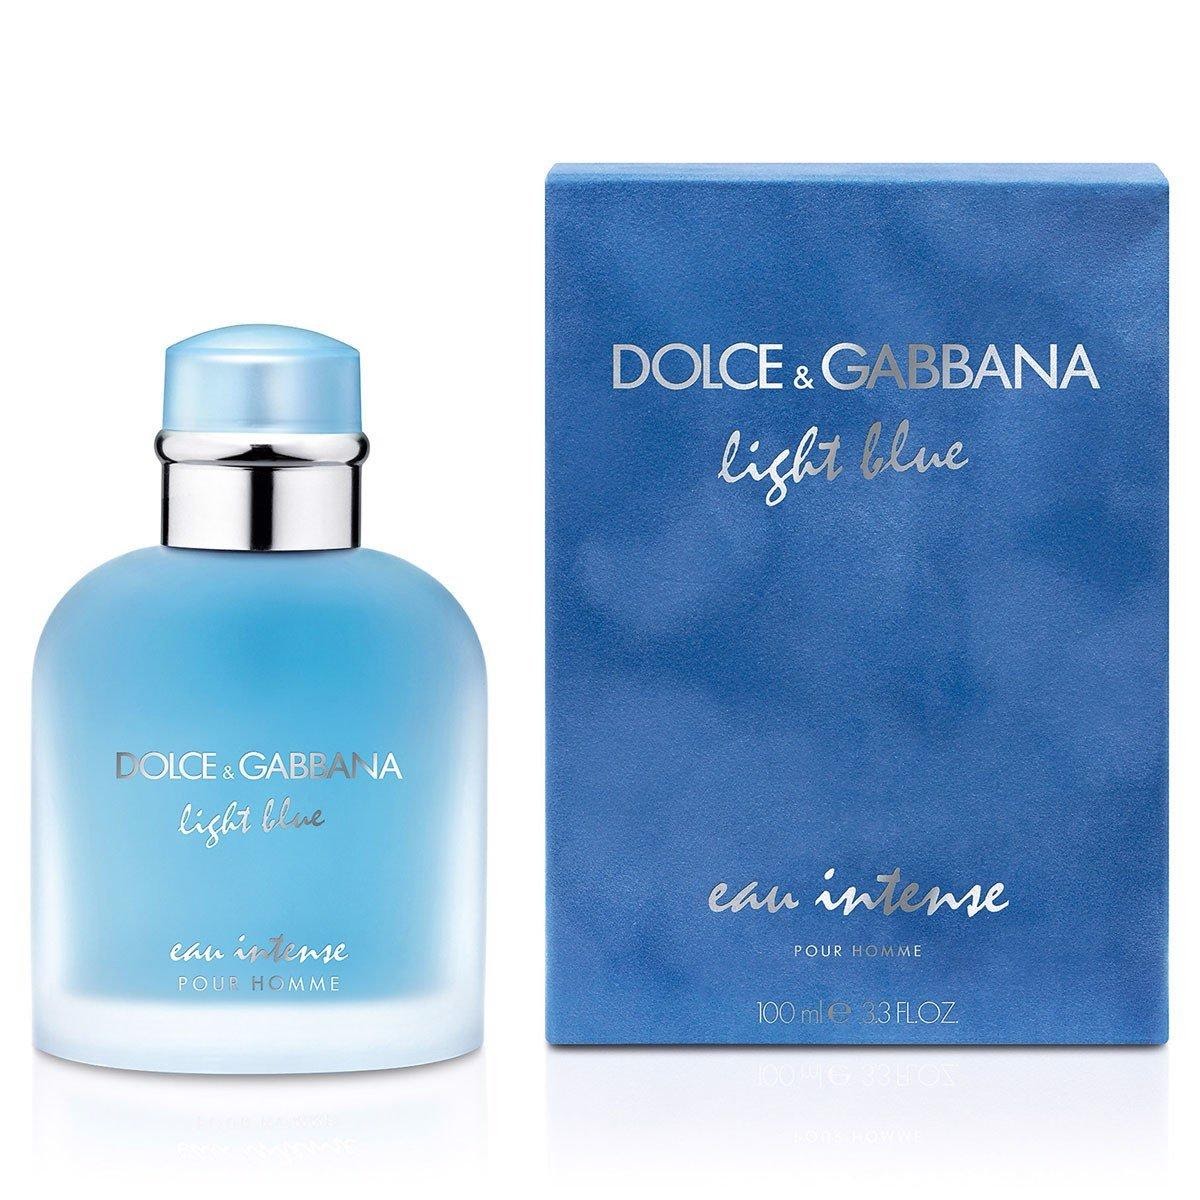 Nước Hoa Dolce & Gabbana hàng xách tay chính hãng - TUNG SHOP